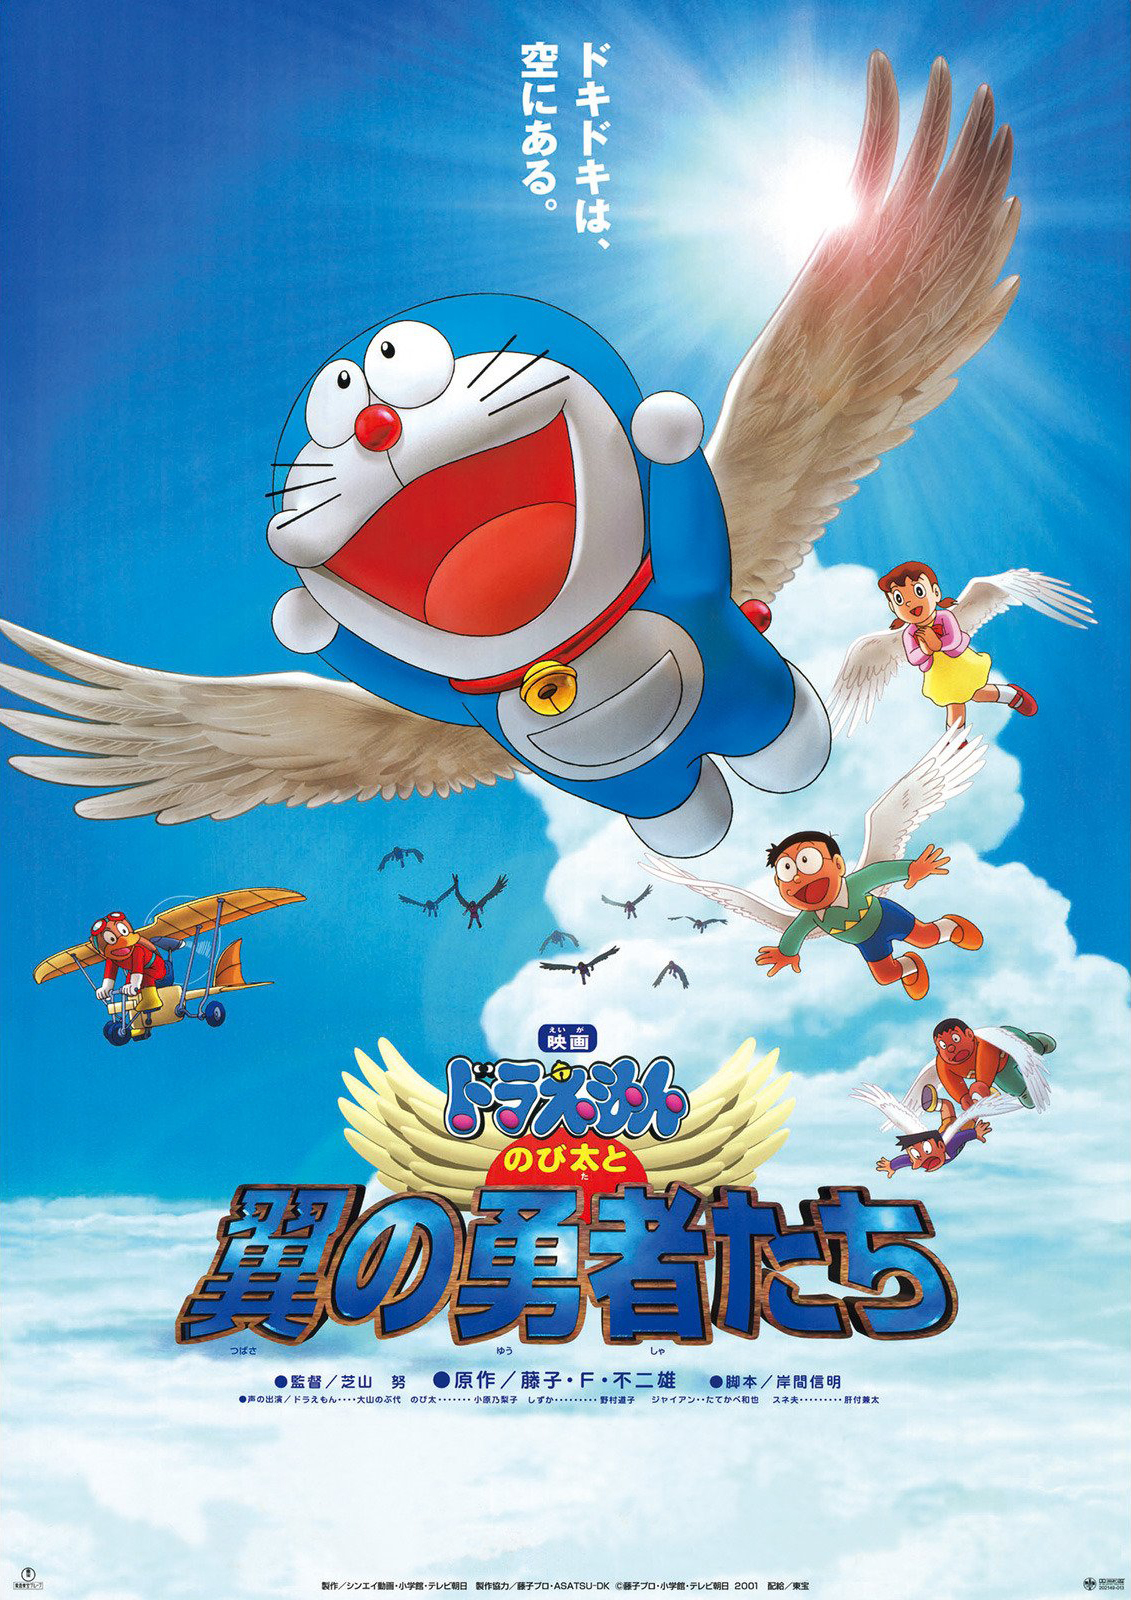 ดูหนังออนไลน์ฟรี Doraemon The Movie (2001) โดราเอมอน ตอน โนบิตะและอัศวินแดนวิหค หนังเต็มเรื่อง หนังมาสเตอร์ ดูหนังHD ดูหนังออนไลน์ ดูหนังใหม่